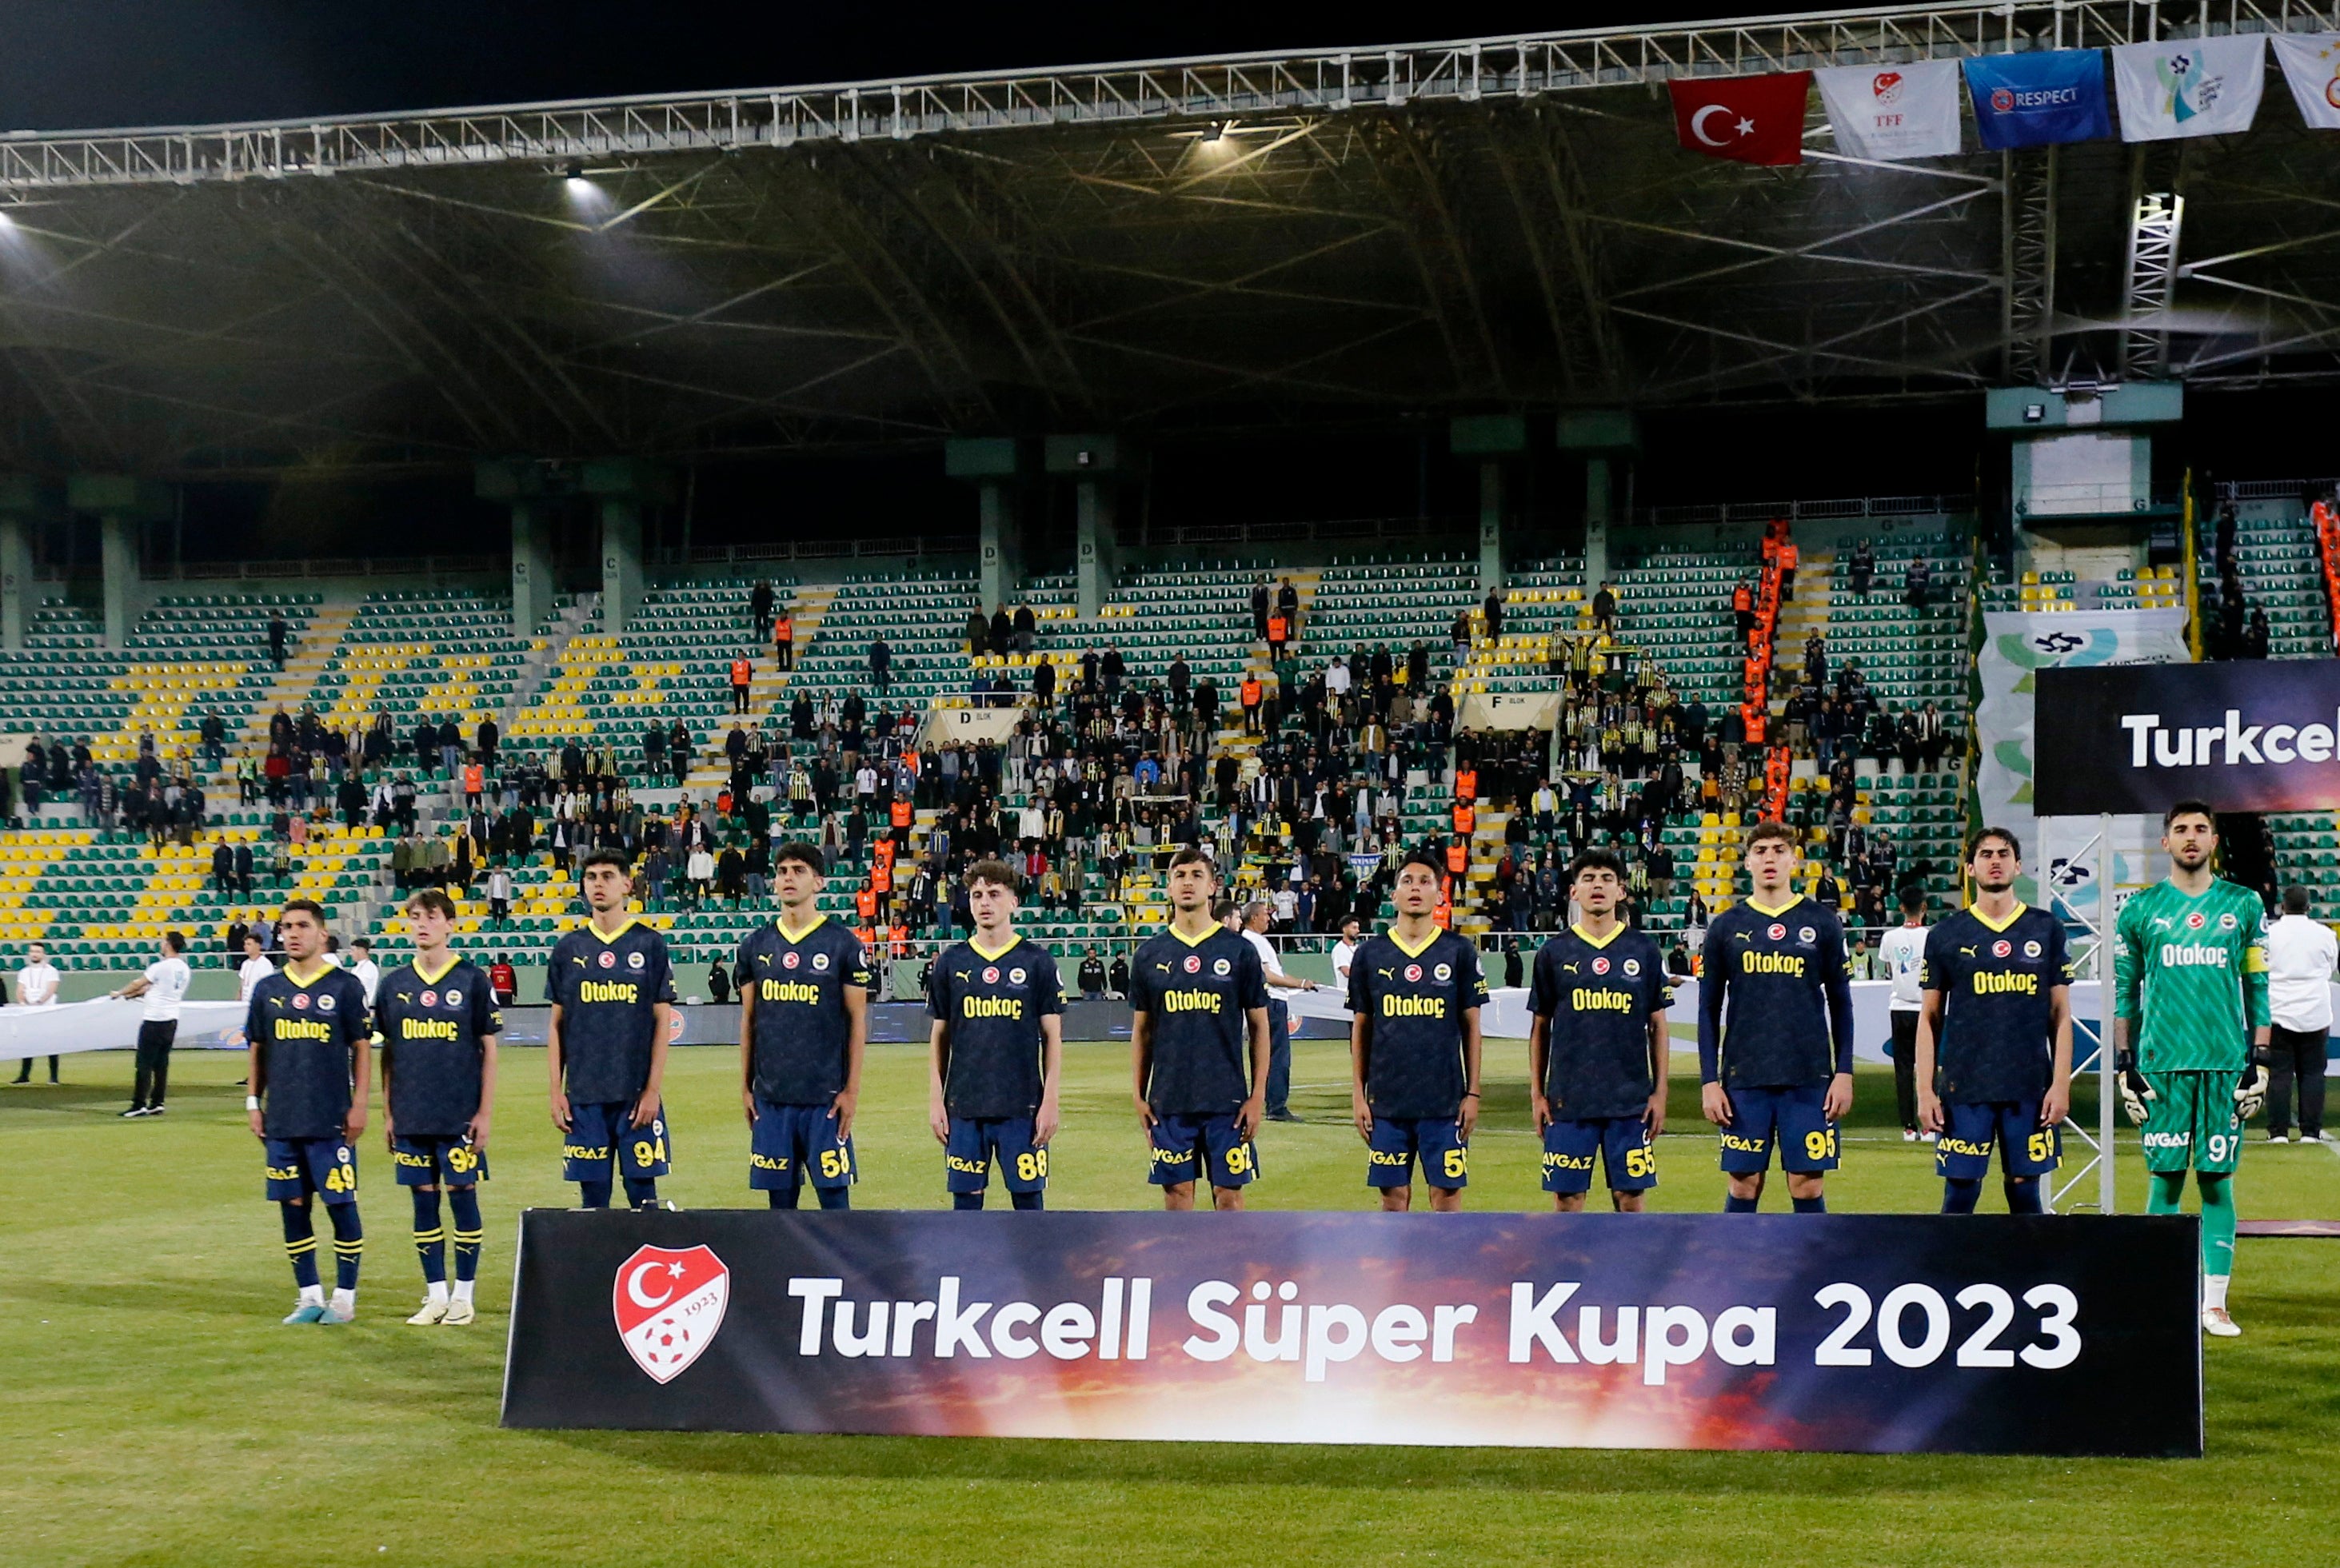 Độc lạ: Chung kết Siêu cúp Thổ Nhĩ Kỳ xác định được nhà vô địch chỉ sau 1 phút.